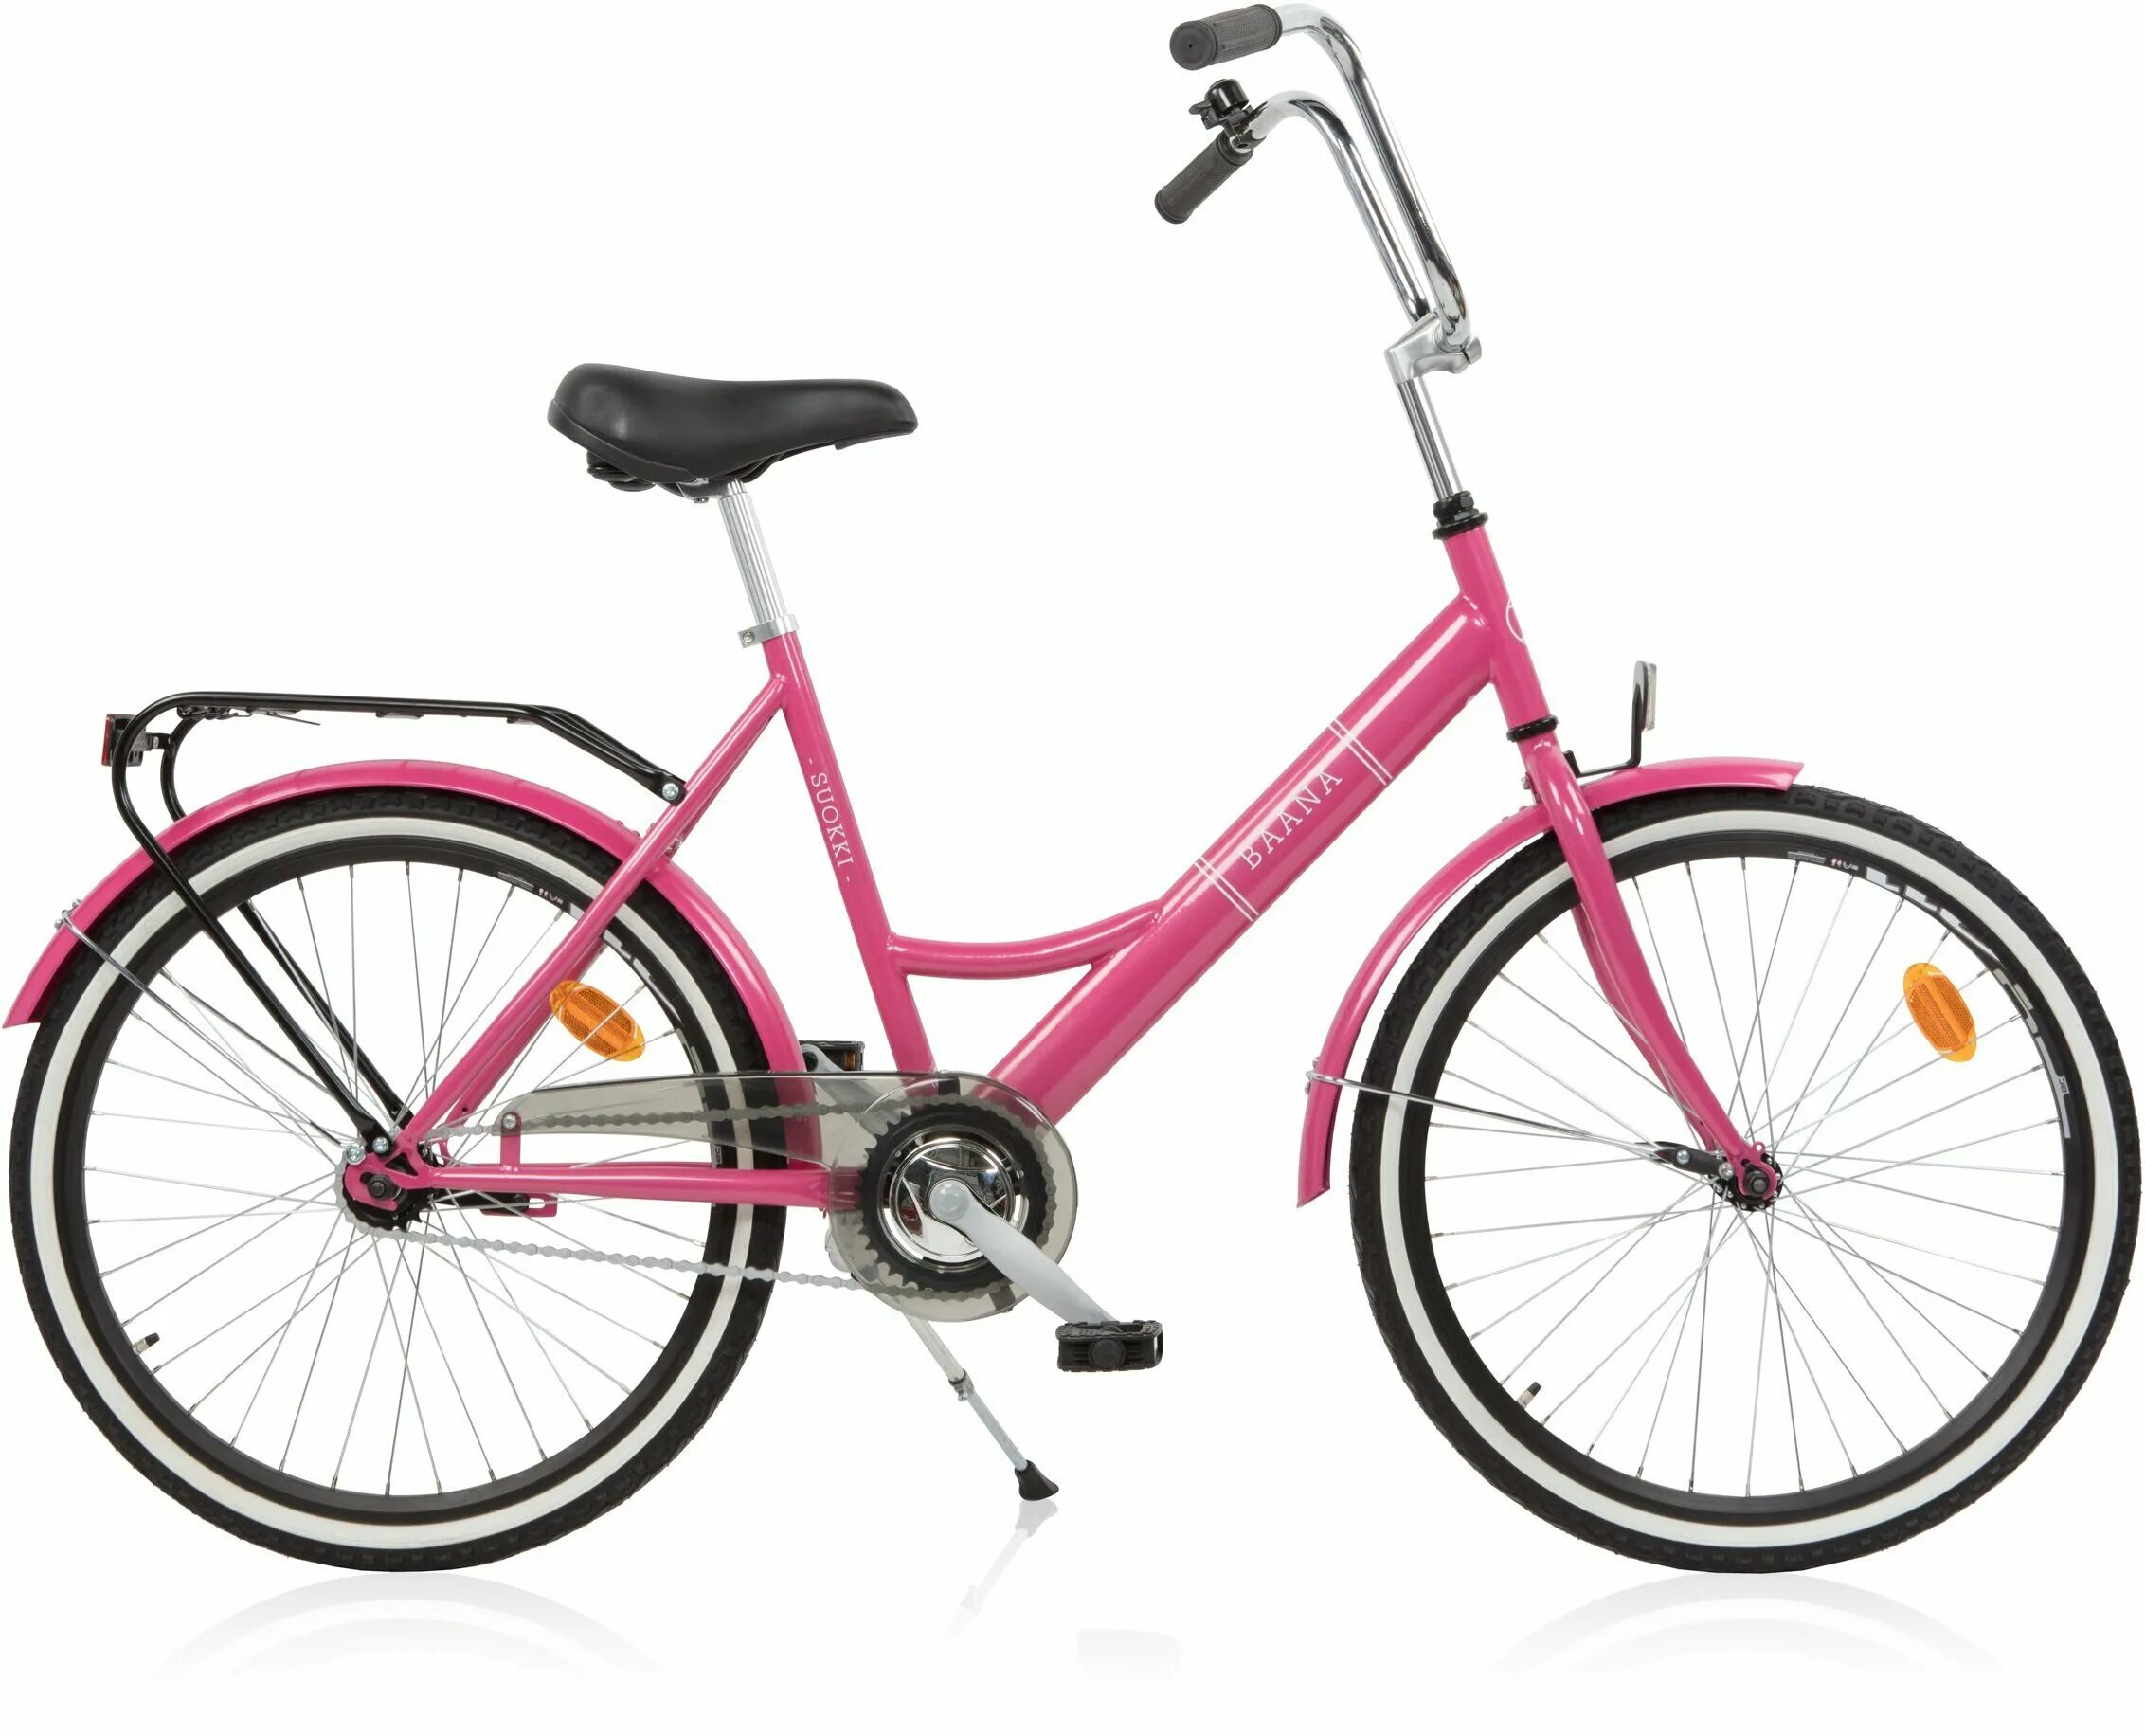 Велосипед 24 розовый. Велосипед с ножным тормозом 24 дюйма. Велосипед женский 24 дюйма. Городской велосипед розовый. Велосипед 24 дюйма для девочки.